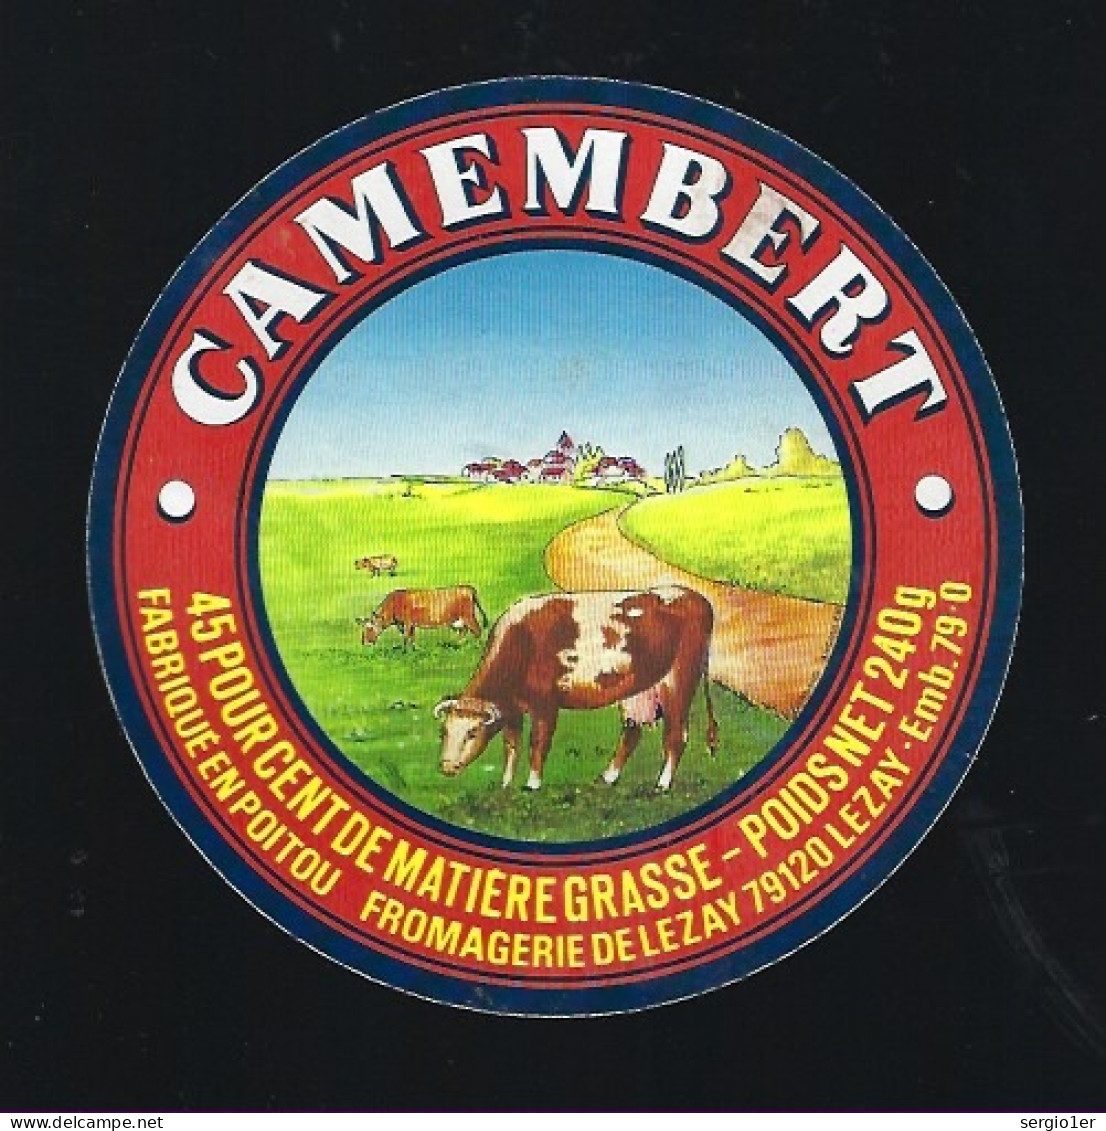 Etiquette Fromage Camembert  45%mg  Fromagerie De Lezay 79 - Käse